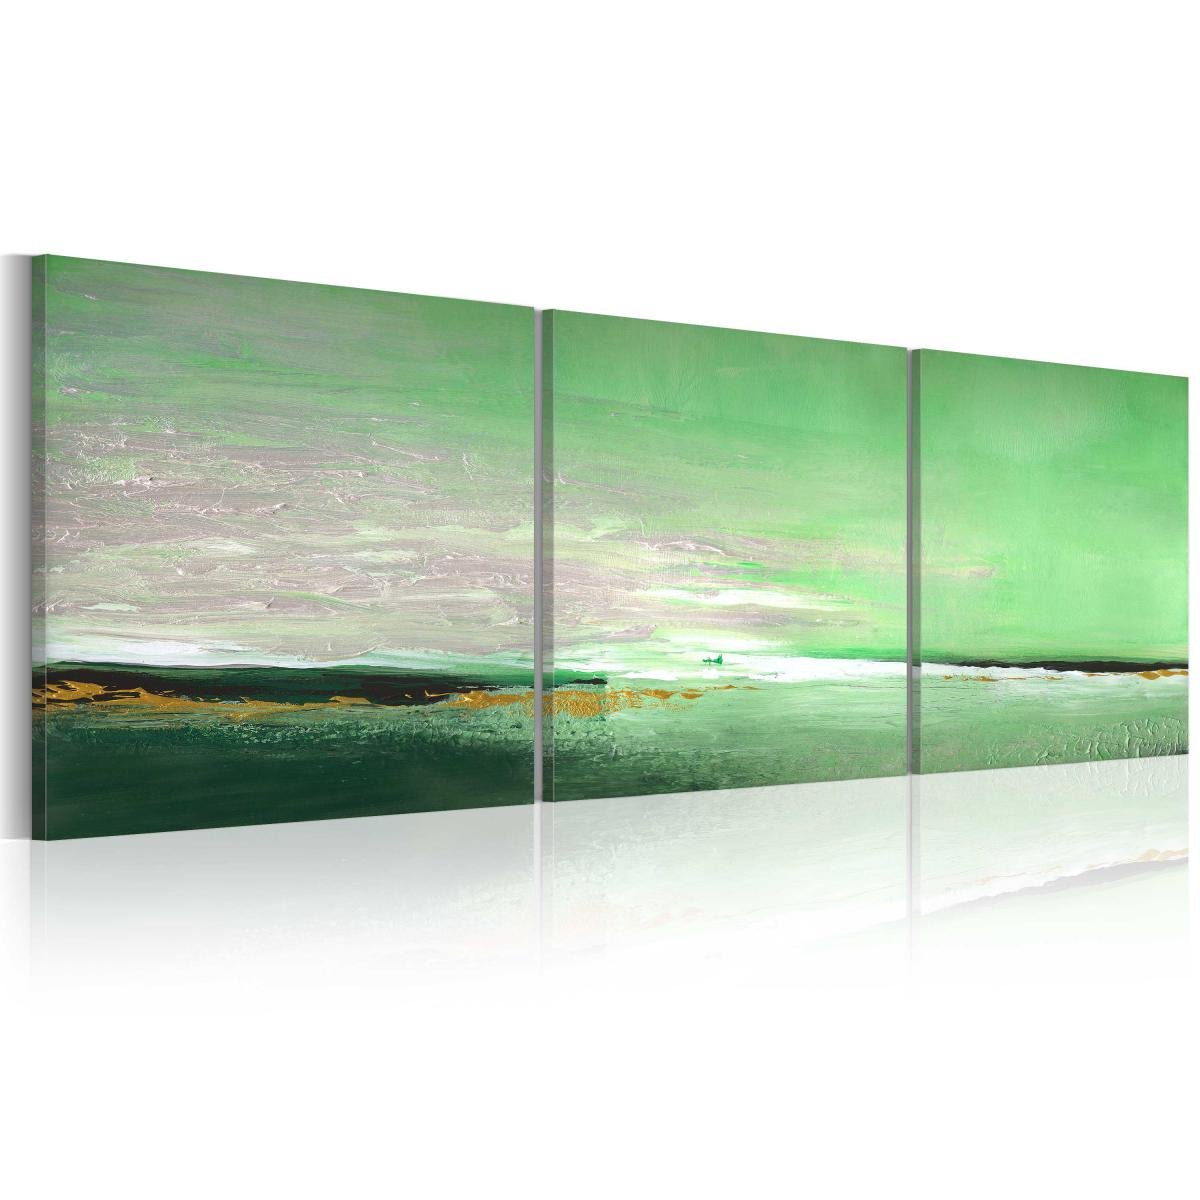 Bimago - Tableau peint à la main - Côte de la couleur verte - Décoration, image, art | 150x50 cm | - Cloisons